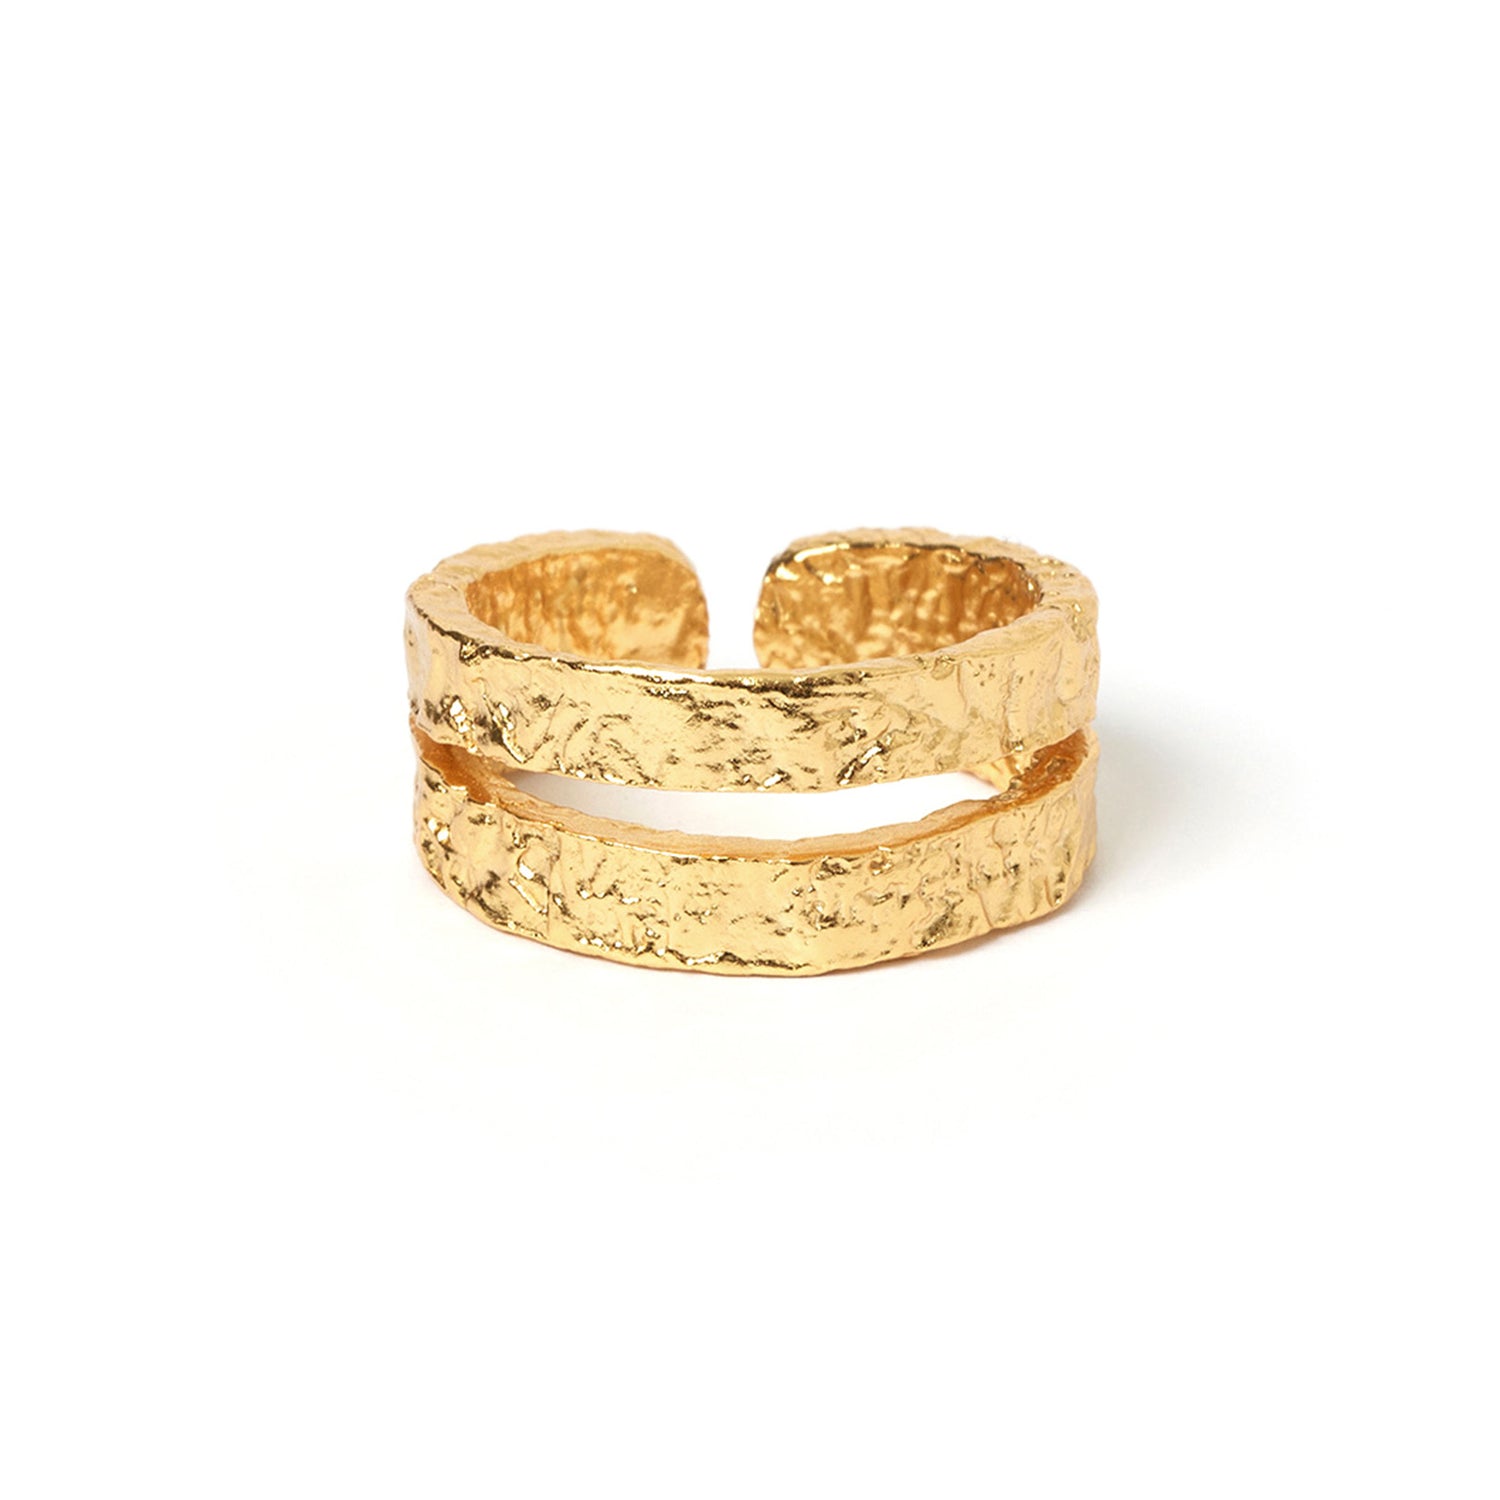 Elodi Gold Ring